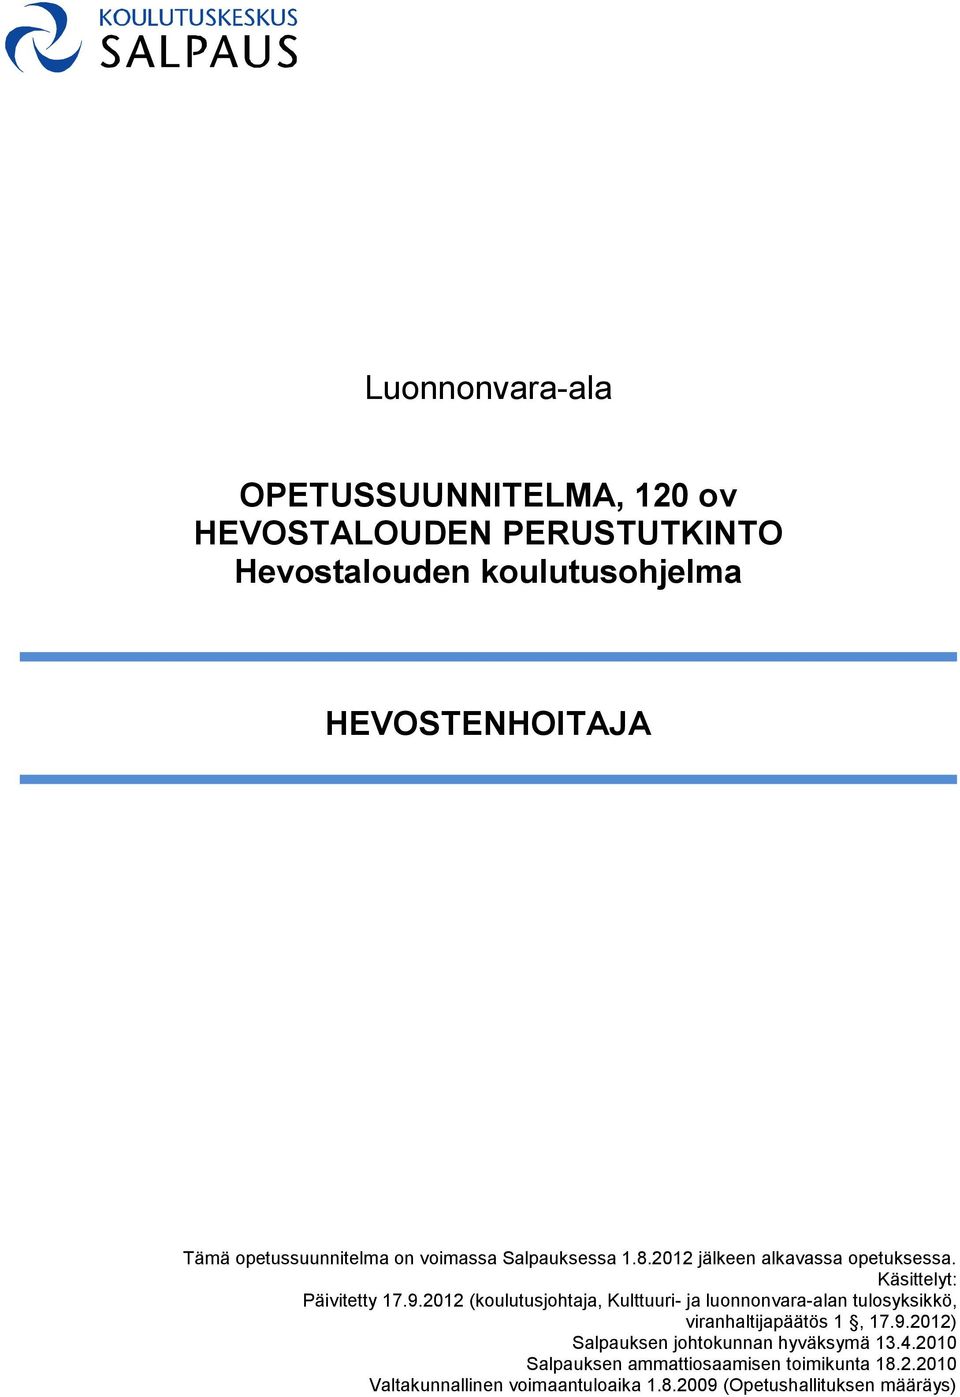 2012 (koulutusjohtaja, Kulttuuri- ja luonnonvara-alan tulosyksikkö, viranhaltijapäätös 1, 17.9.